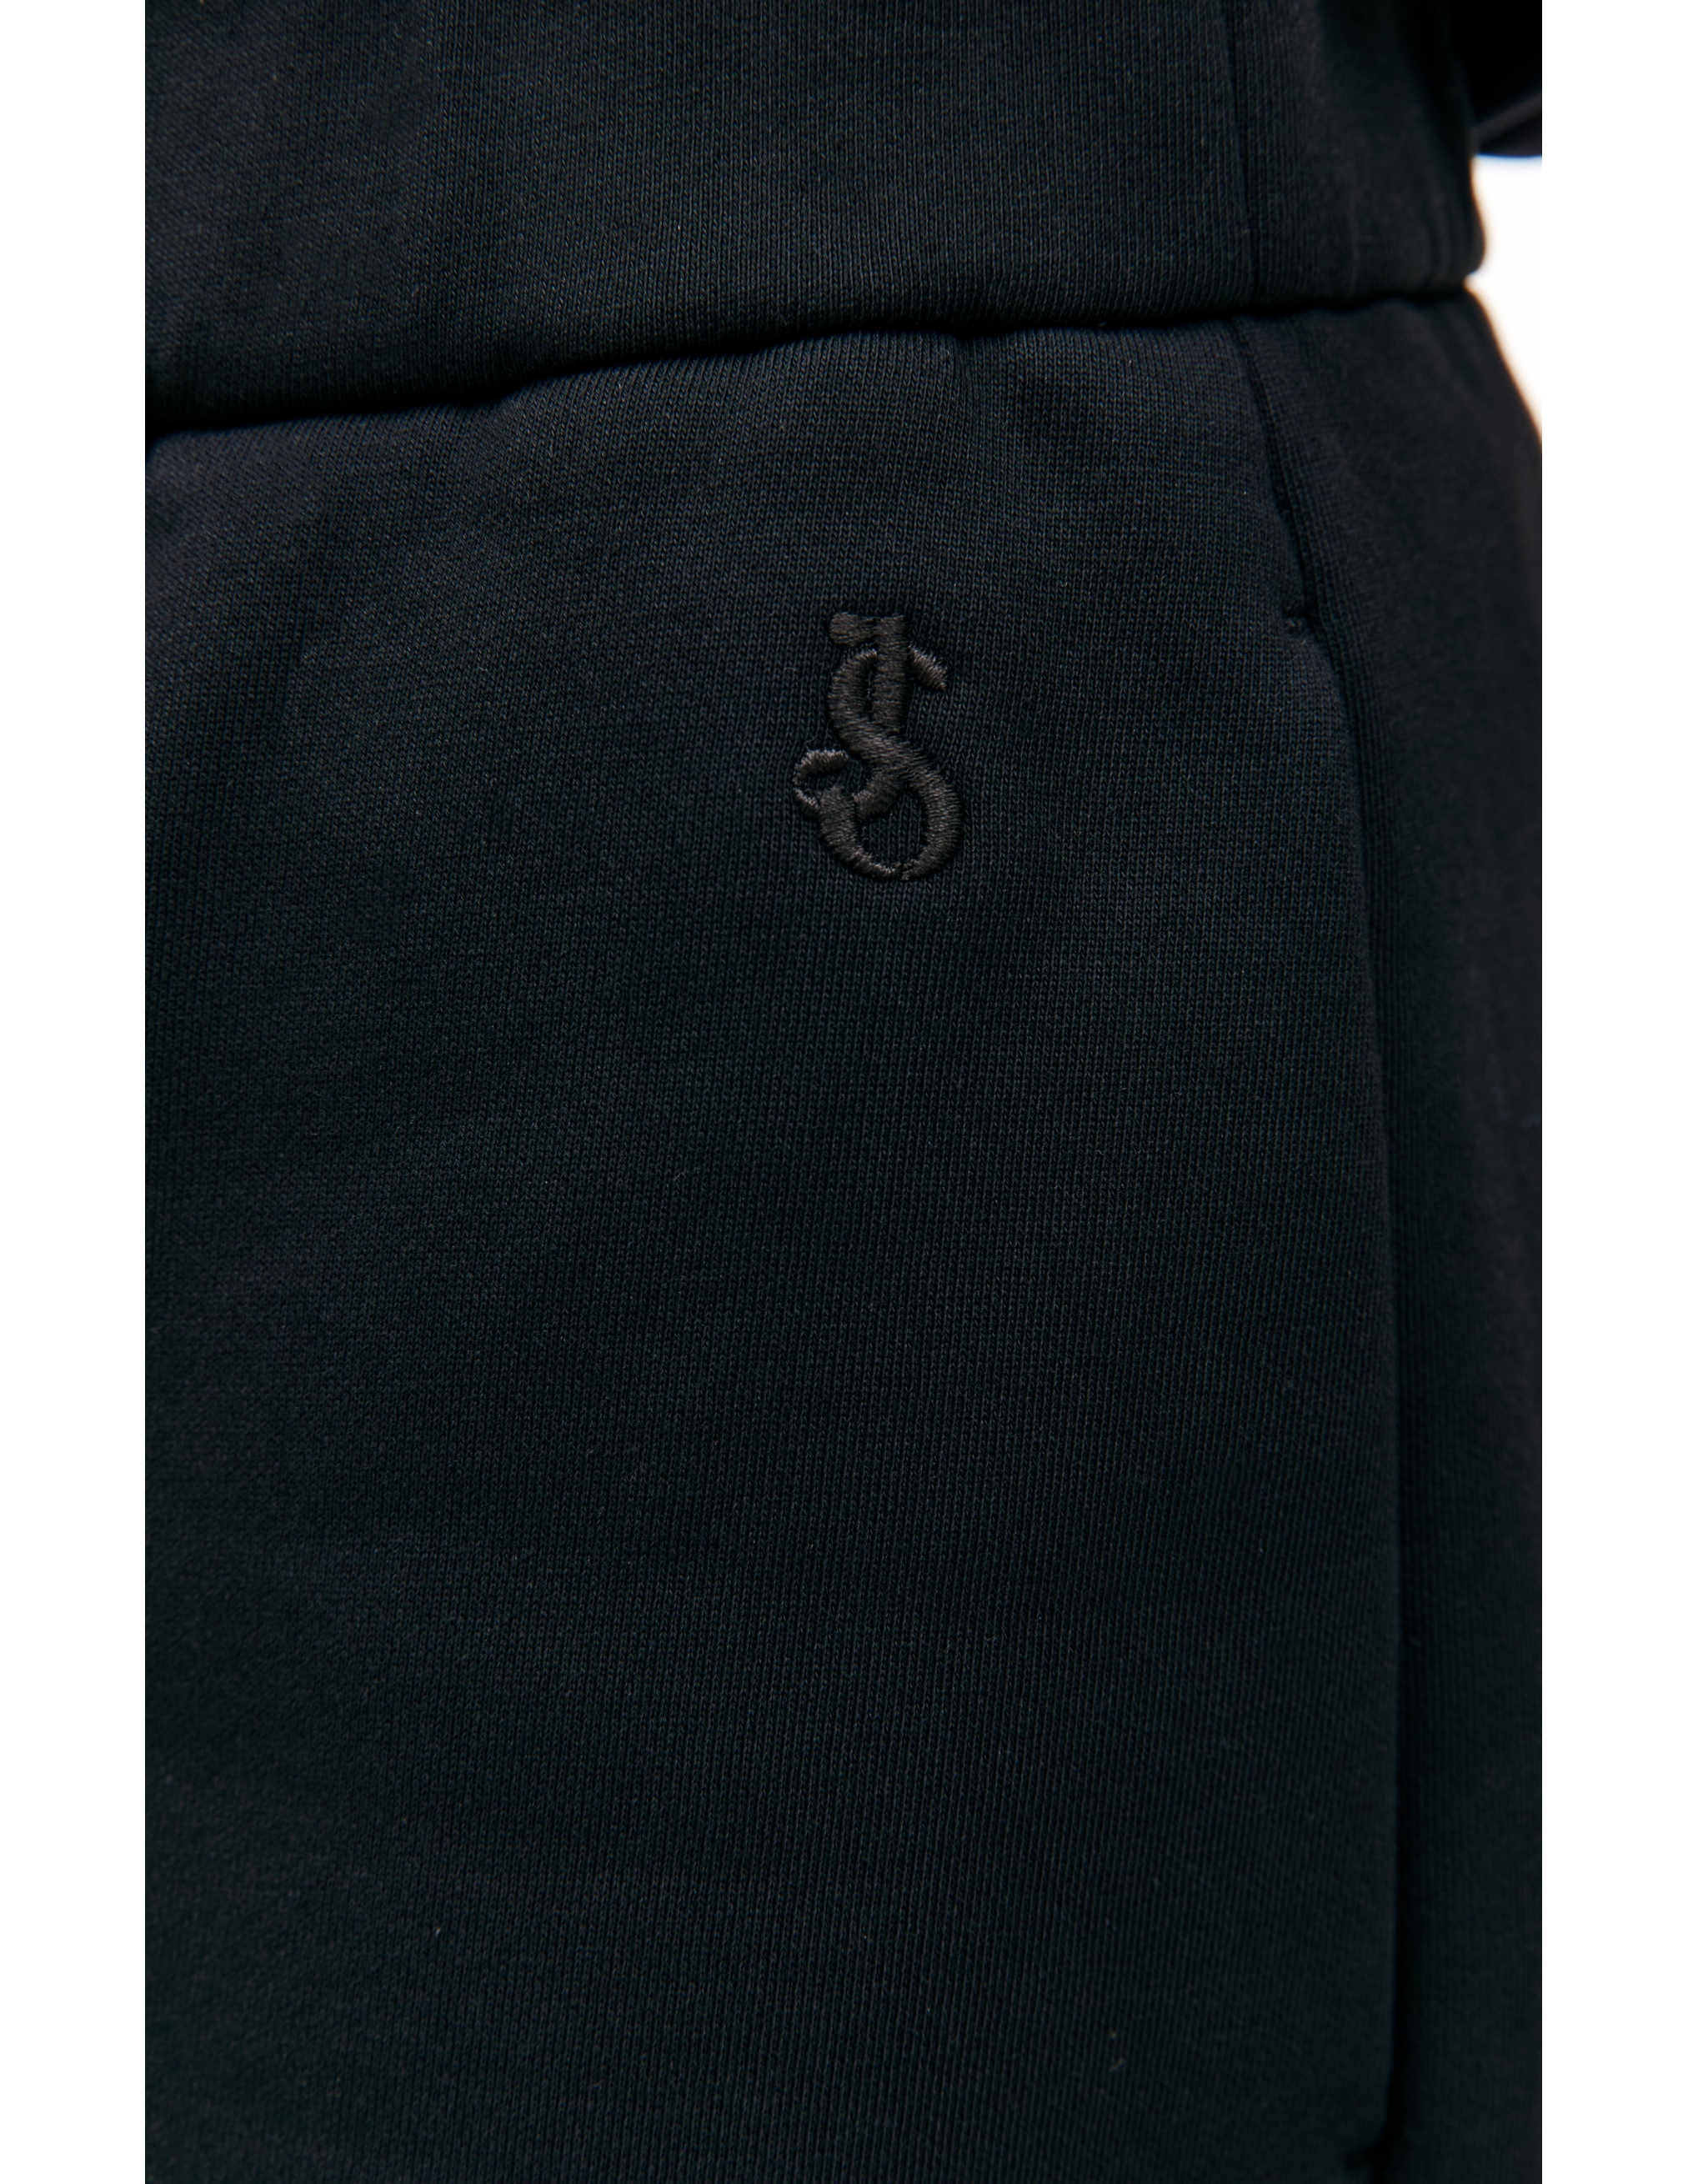 Черные короткие шорты Jil Sander J22MU0122/J20128/001, размер M;L;XL J22MU0122/J20128/001 - фото 4